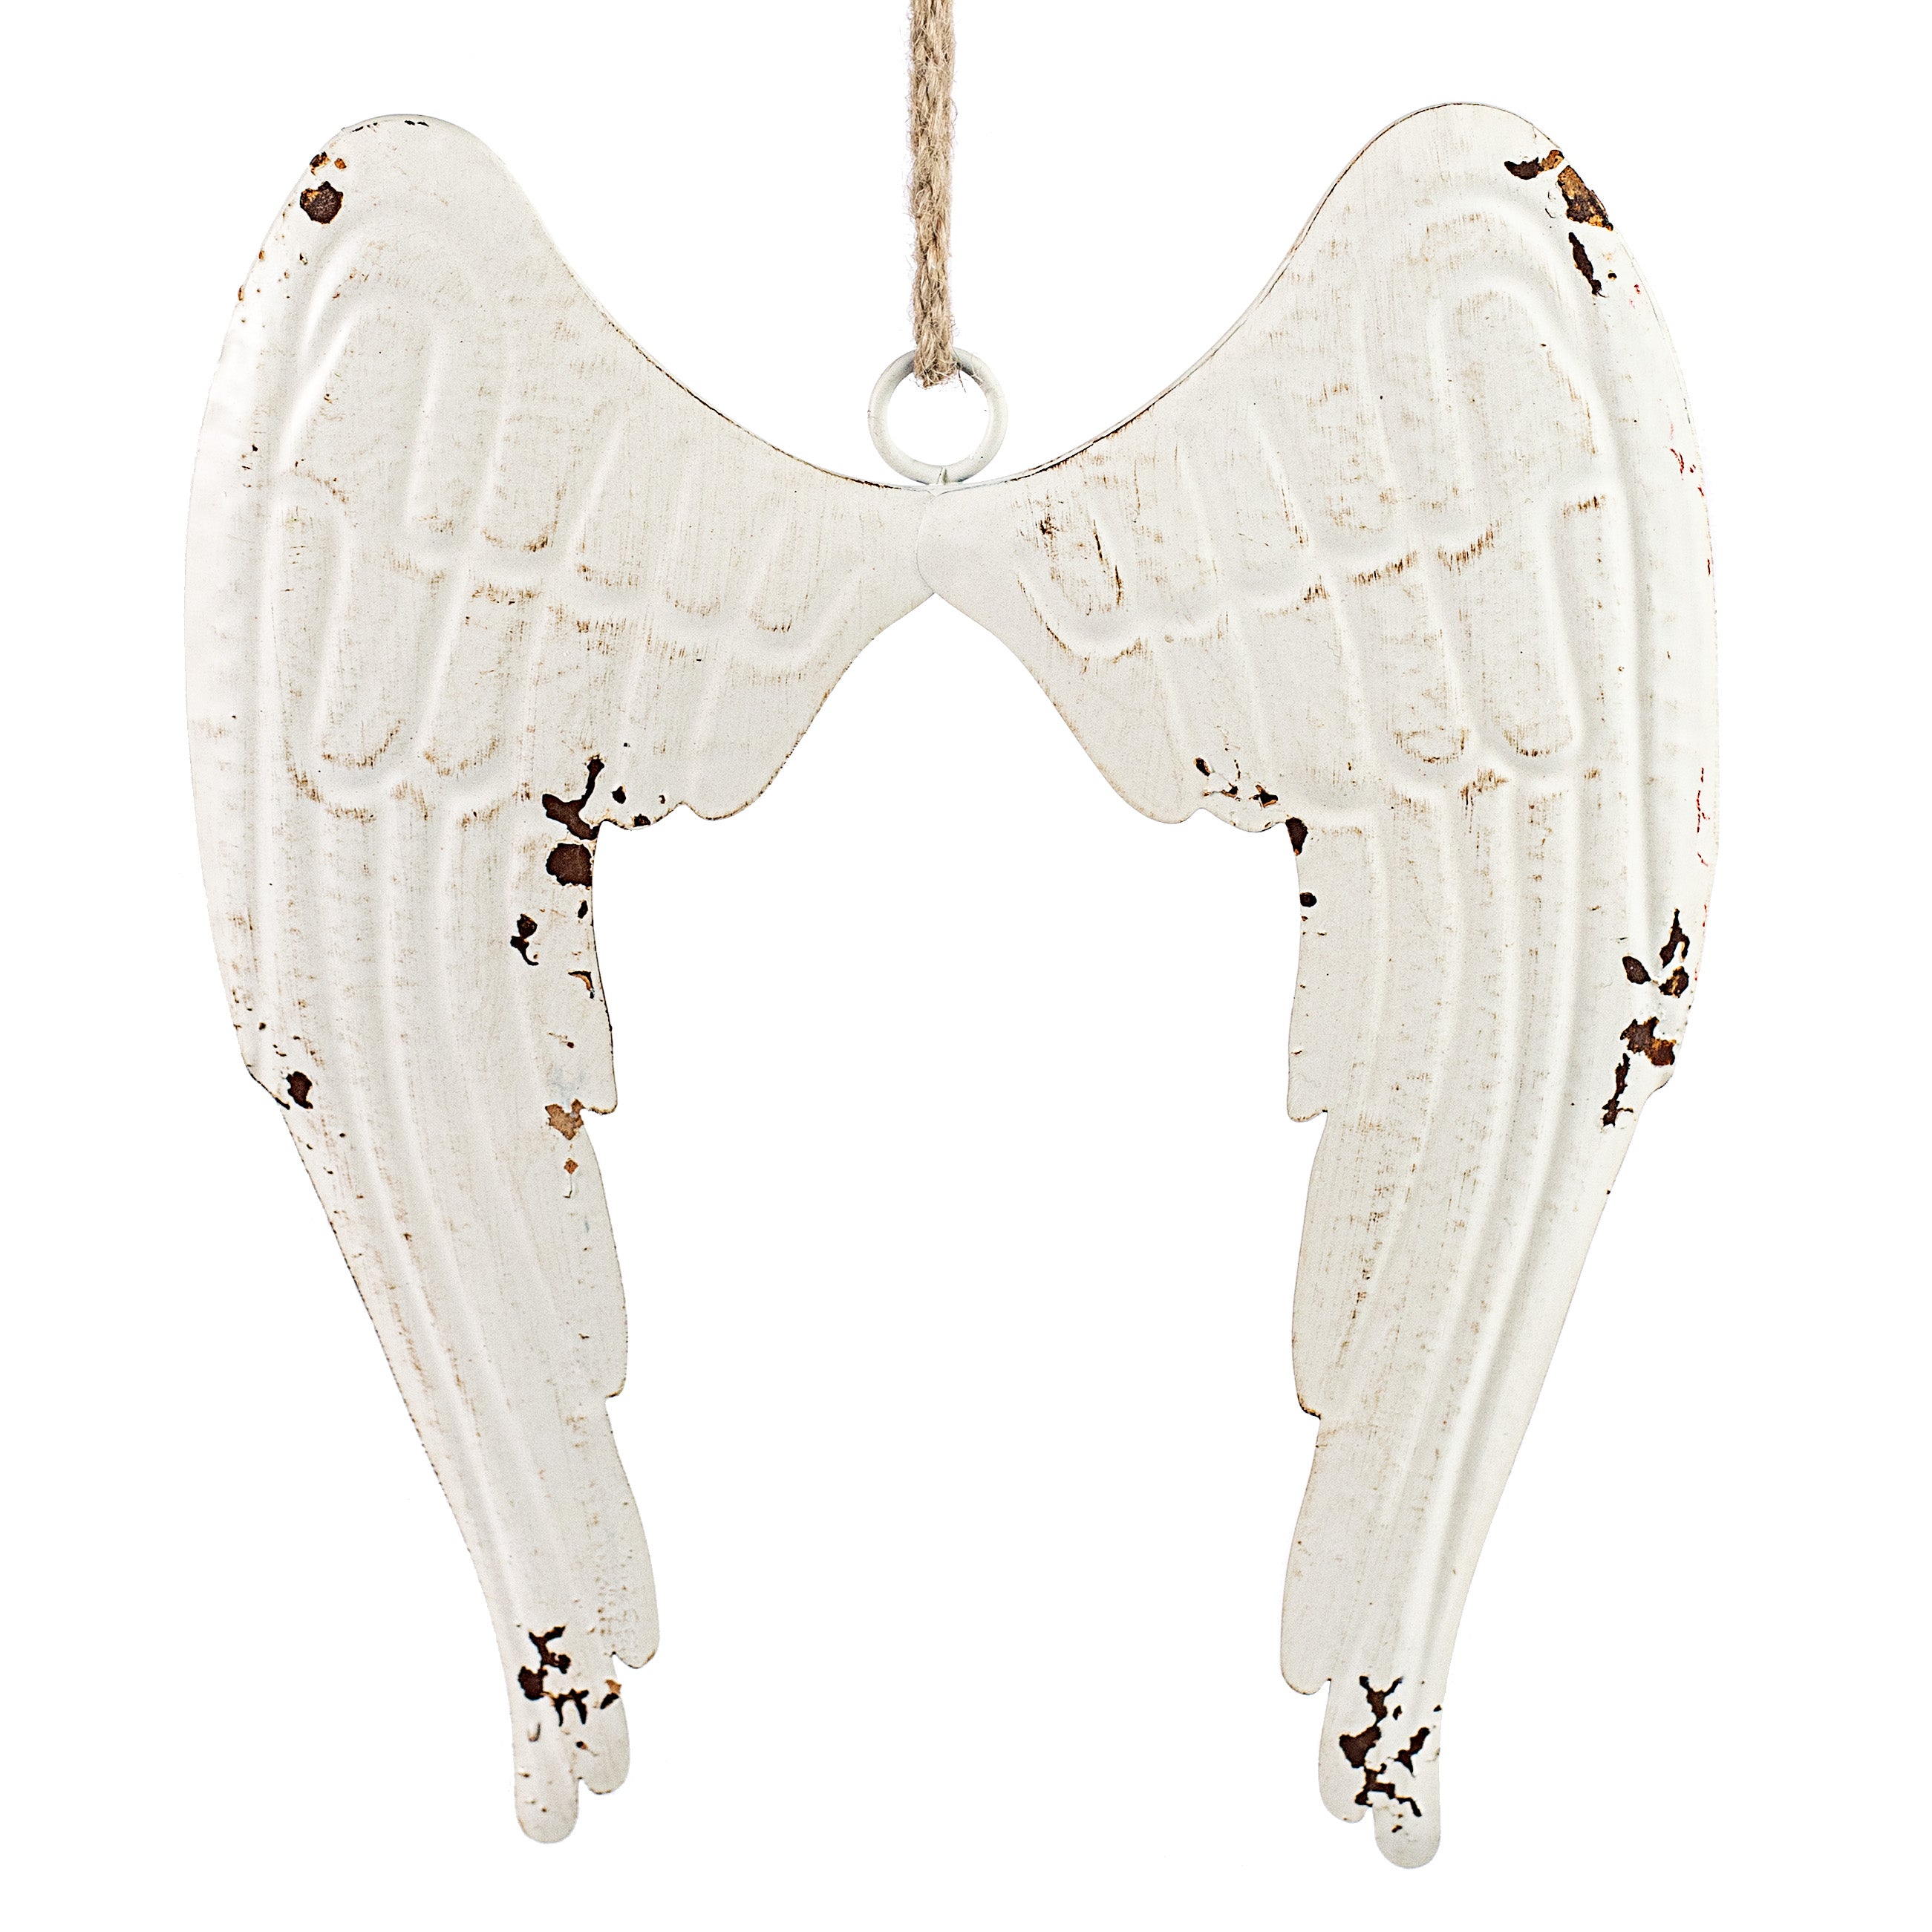 13" Distressed Metal Angel Wings Ornament